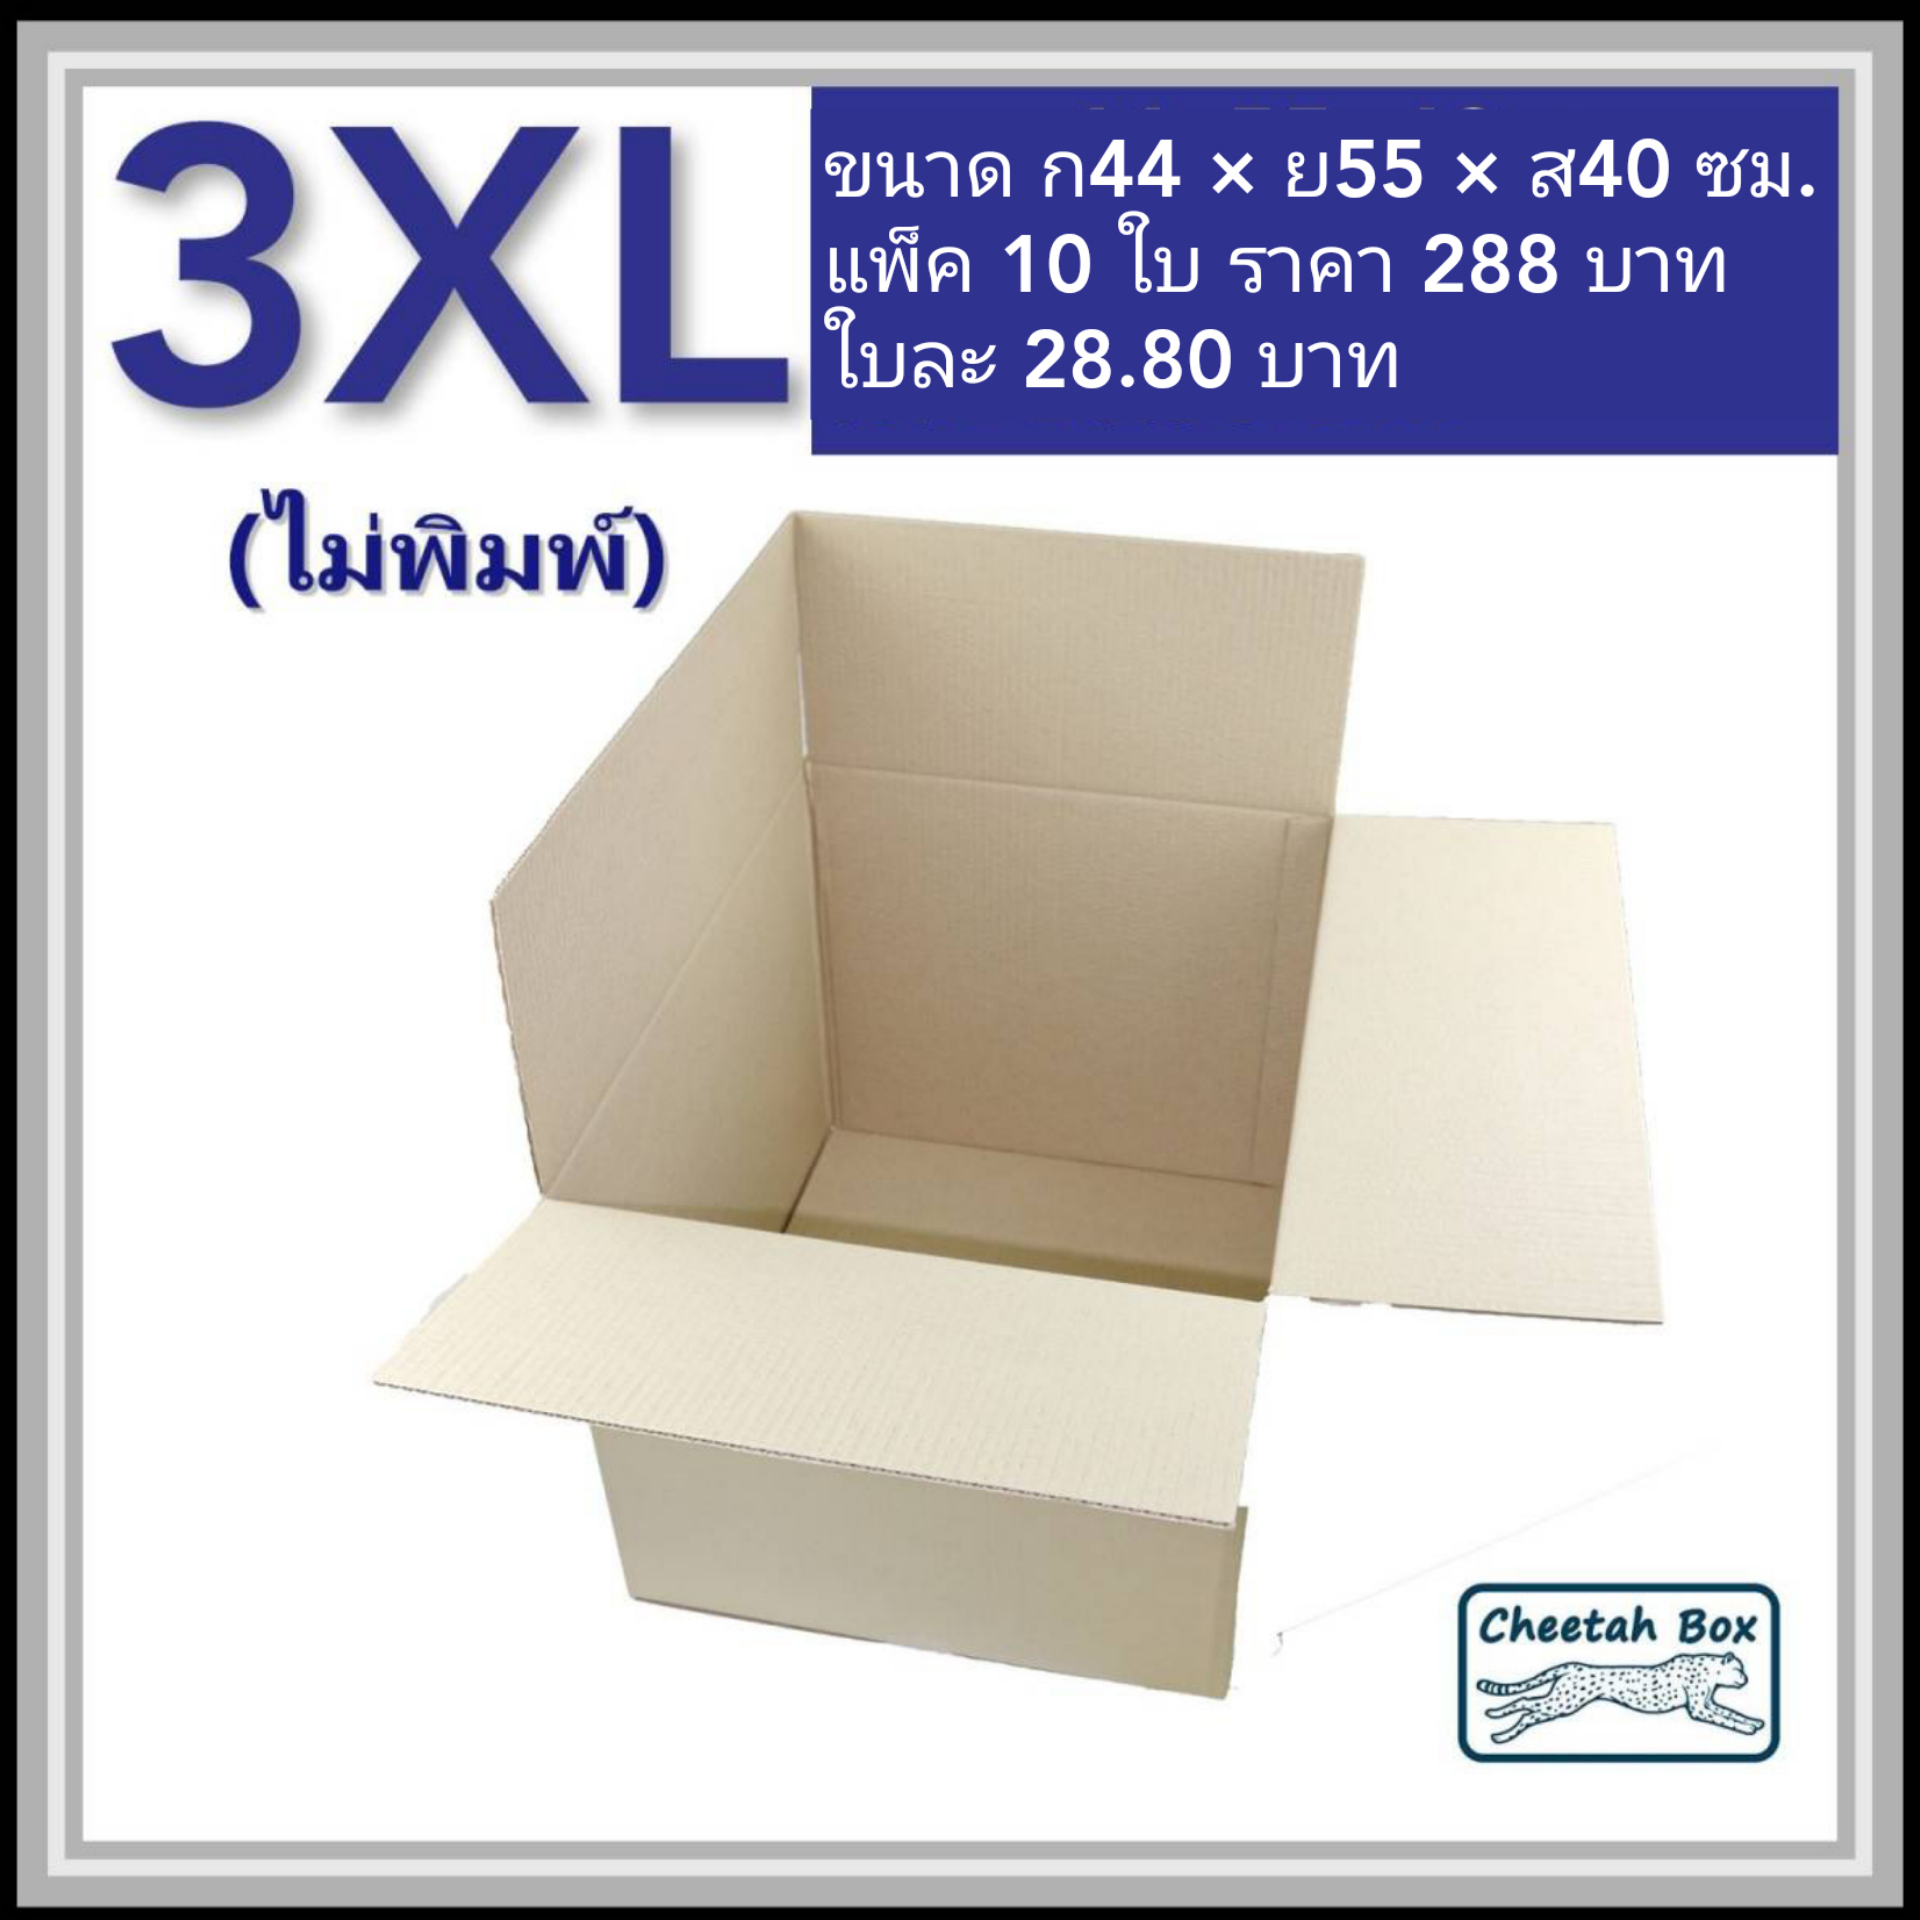 กล่องพัสดุ 3 ชั้น รหัส 3XL ไม่พิมพ์ (Cheetah Box) 44W x 55L x 40H cm.